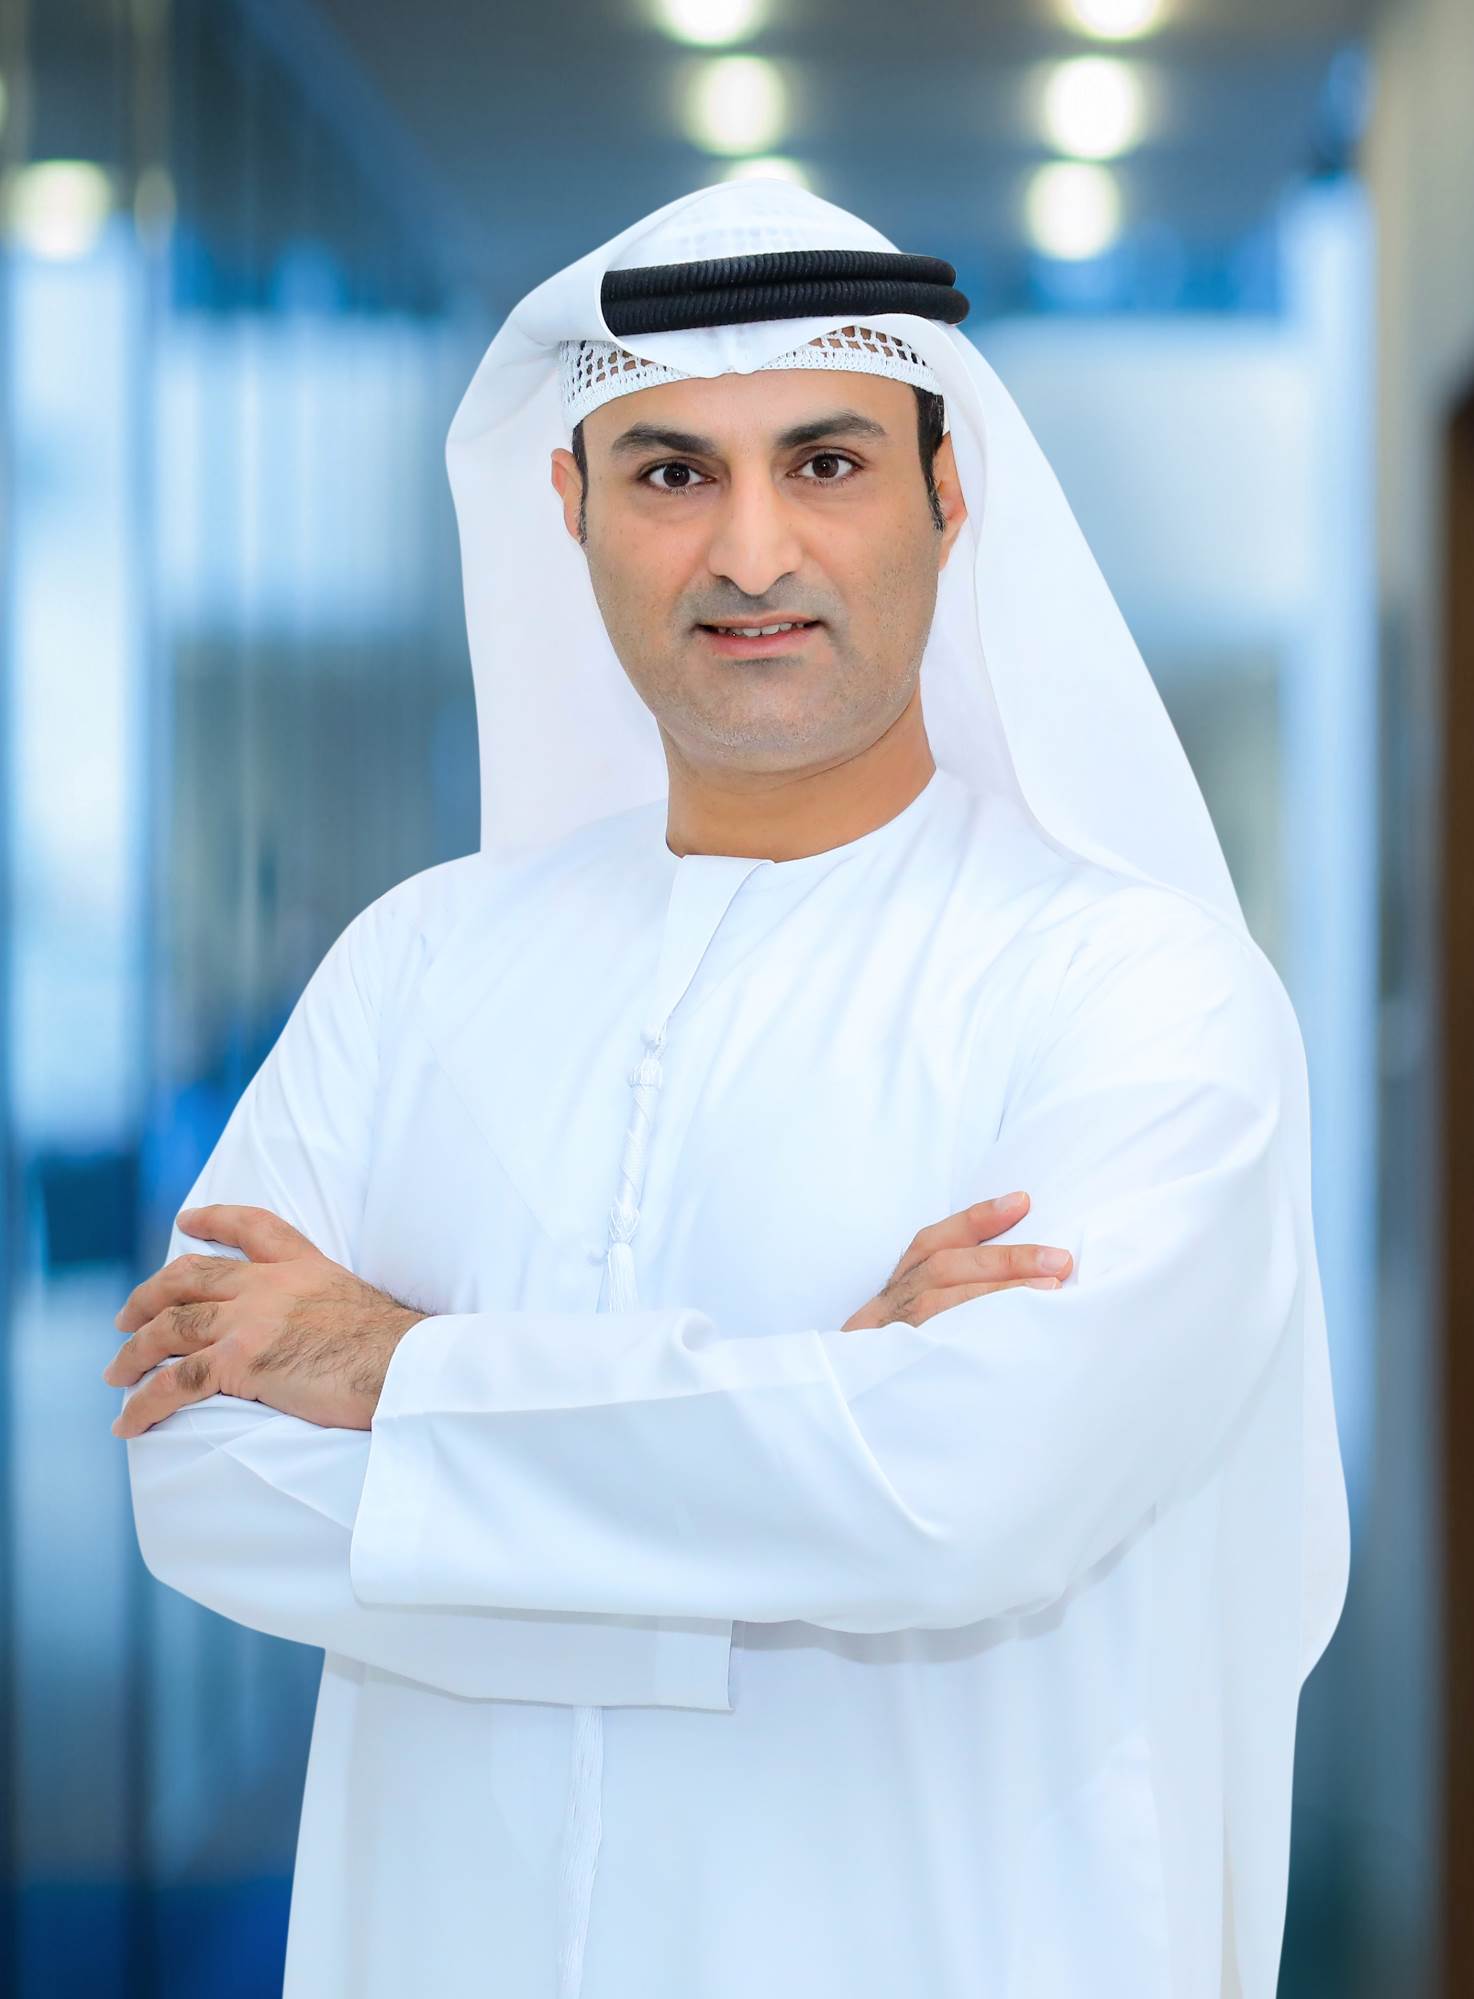 ماجد المري المدير التنفيذي لقطاع التسجيل والخدمات العقارية في أراضي دبي